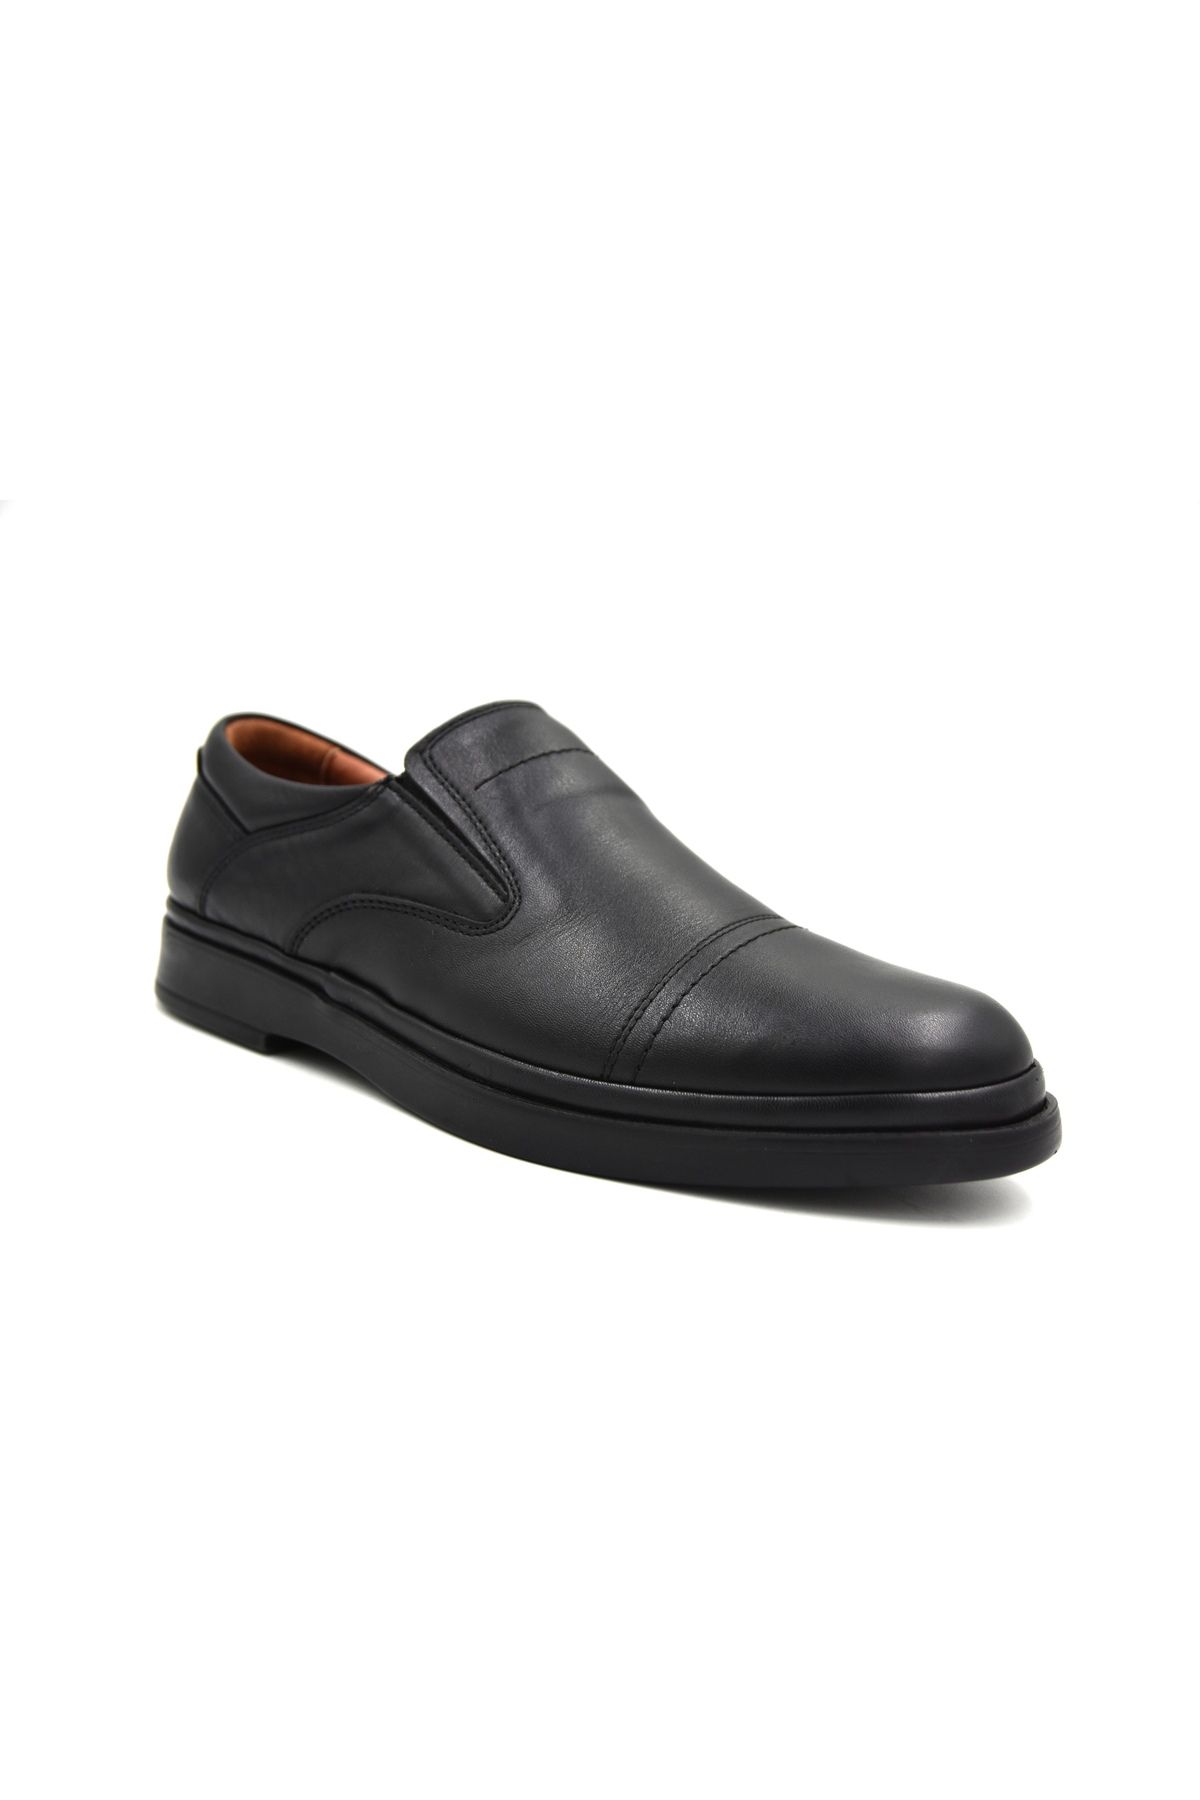 Prego (Tardelli) İçi Dışı Hakiki Deri İçi Jel Poli Hafif Taban Erkek Günlük Comfort Ayakkabı SİYAH